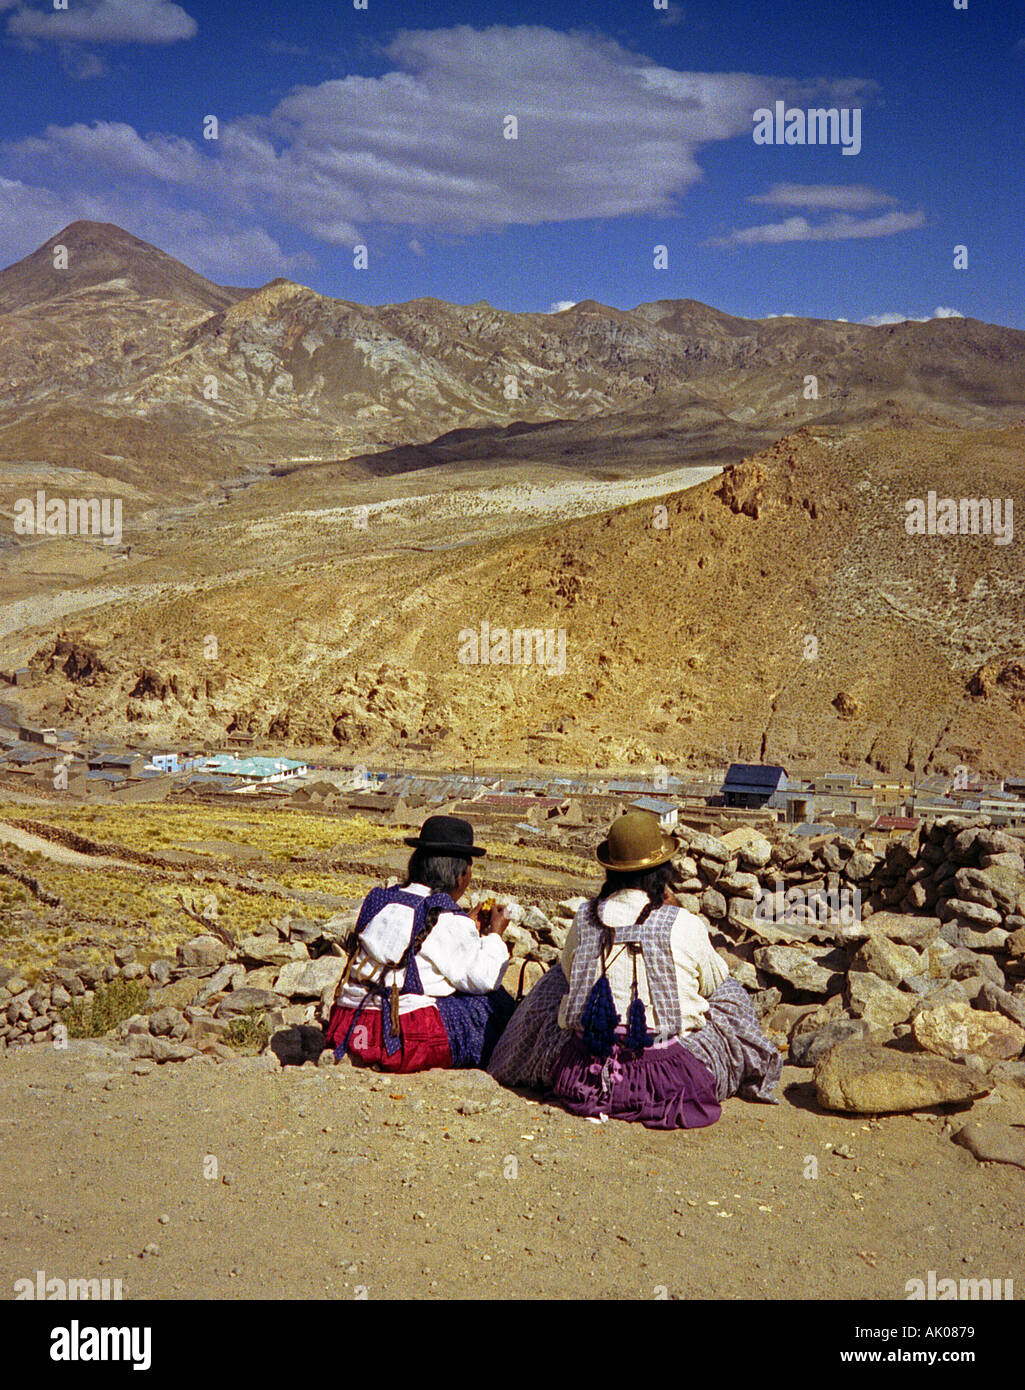 Paar Freunde indigene Frauen in traditioneller Kleidung sitzen am Rand der Klippe von Minen Potosí Bolivien Südamerika Latein Stockfoto